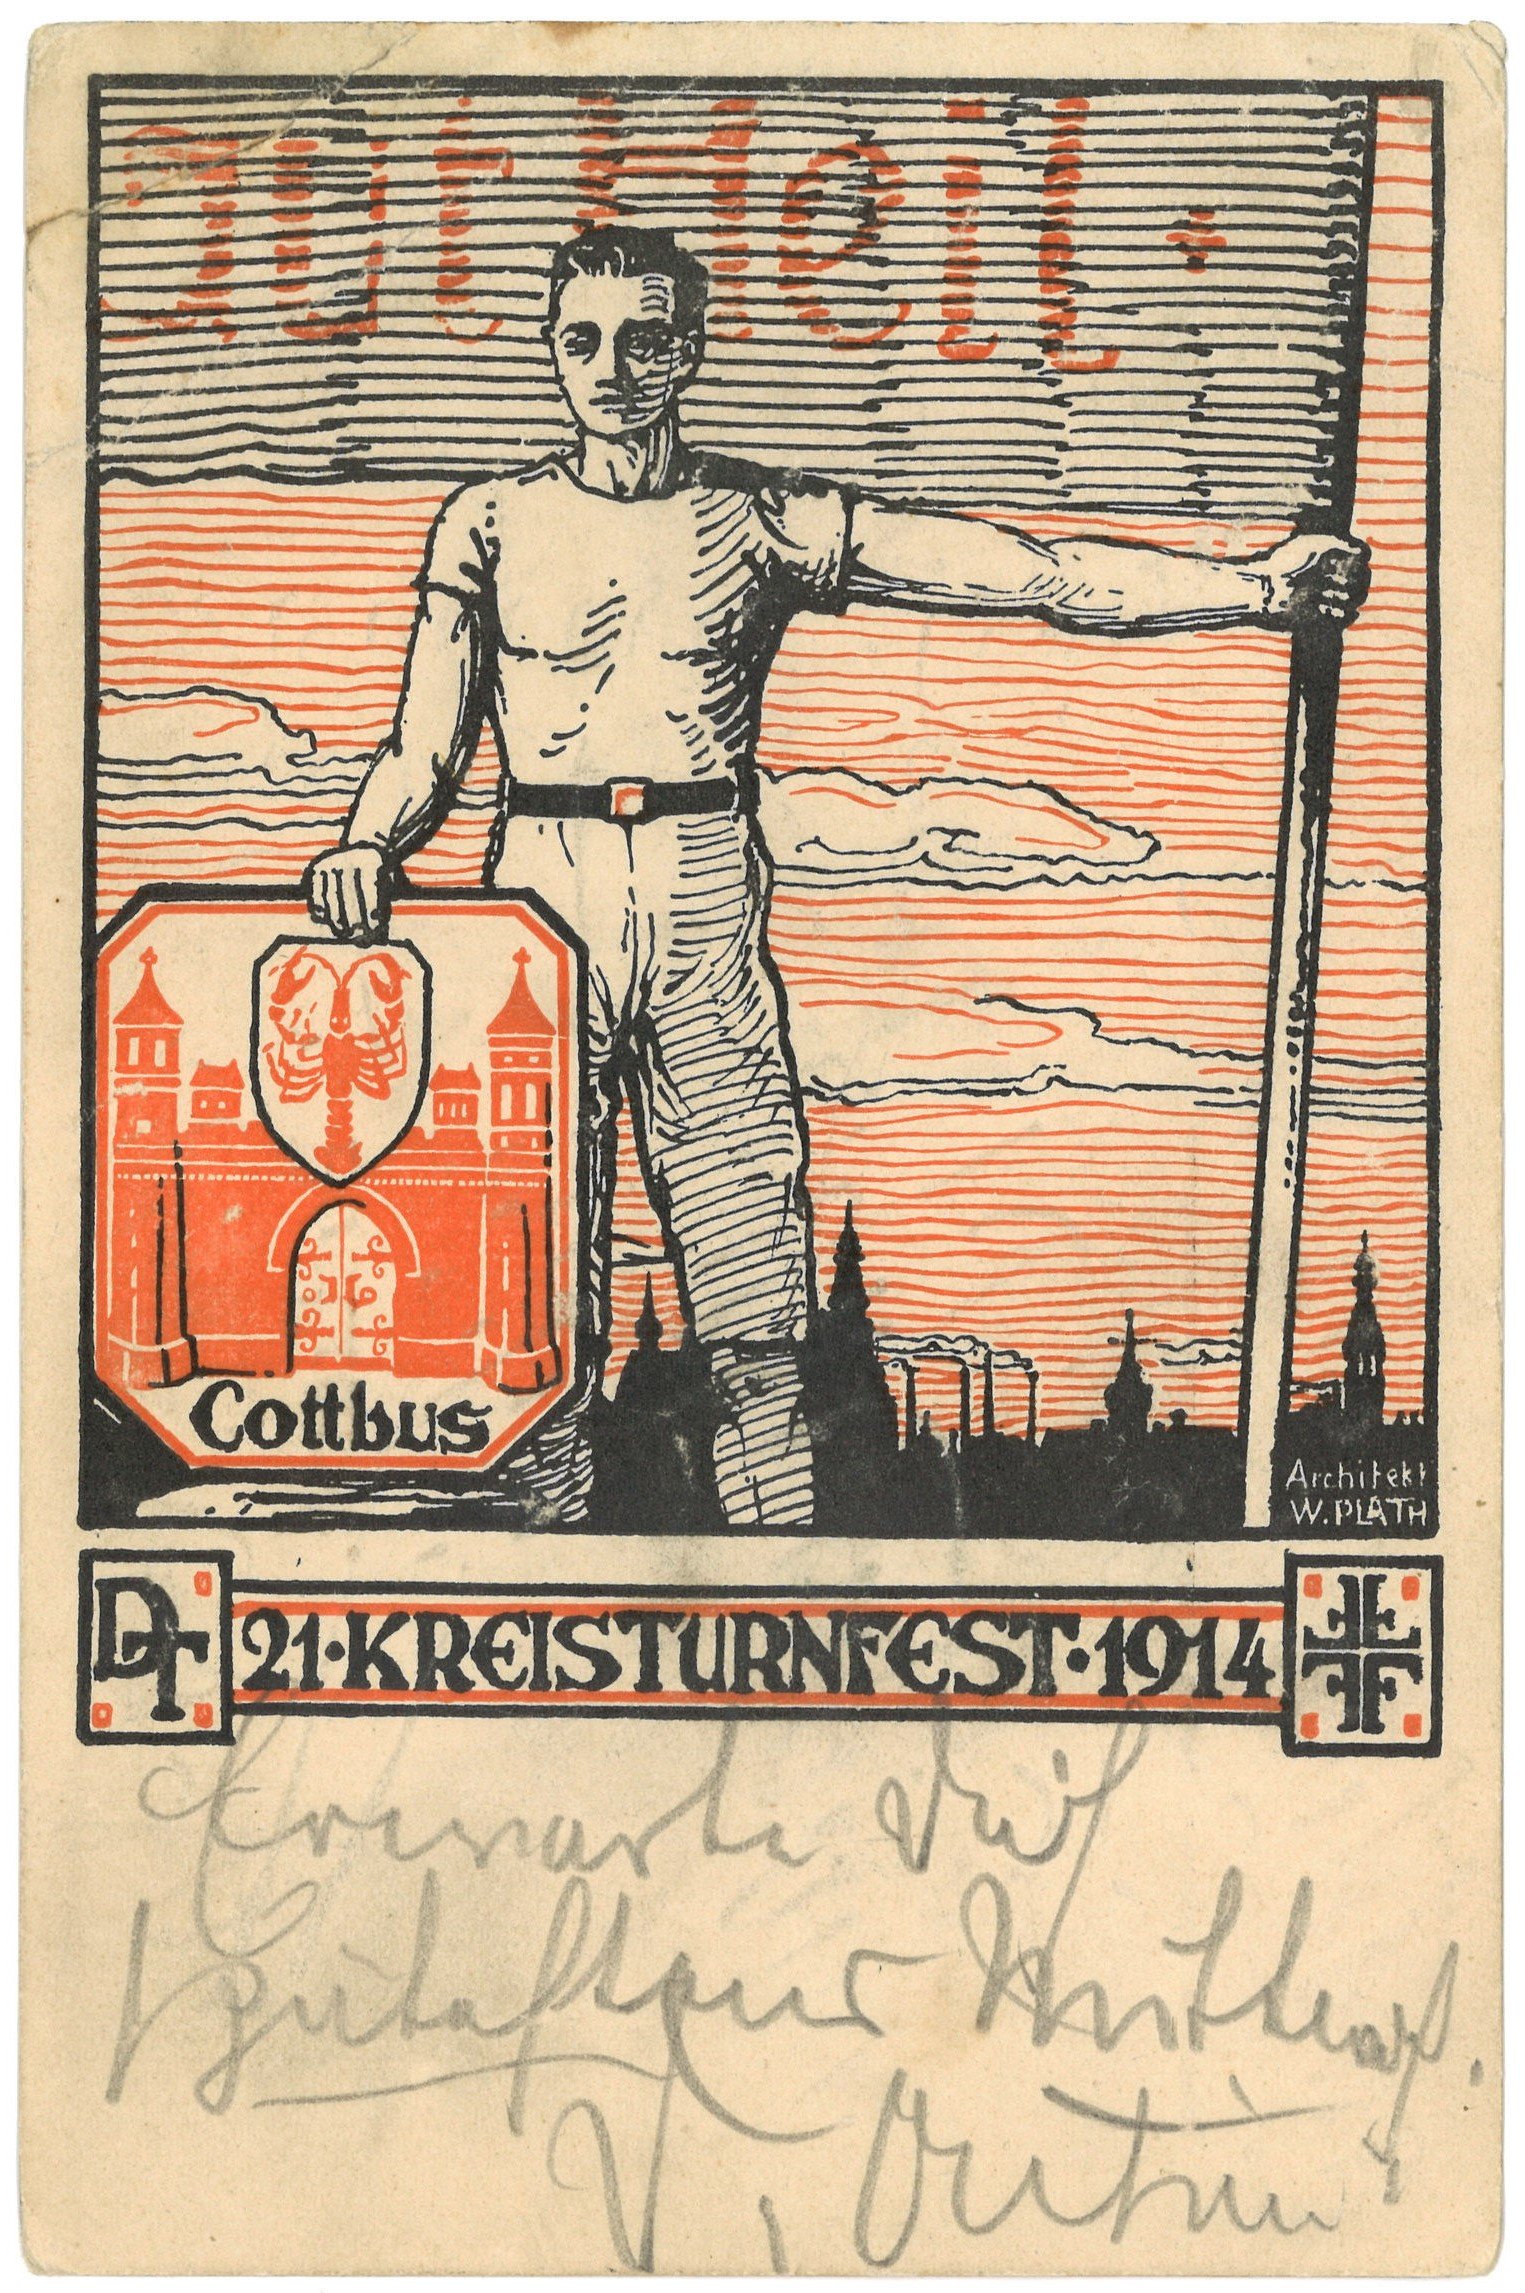 Cottbus: 21. Kreisturnfest 1914 (Landesgeschichtliche Vereinigung für die Mark Brandenburg e.V. CC BY)